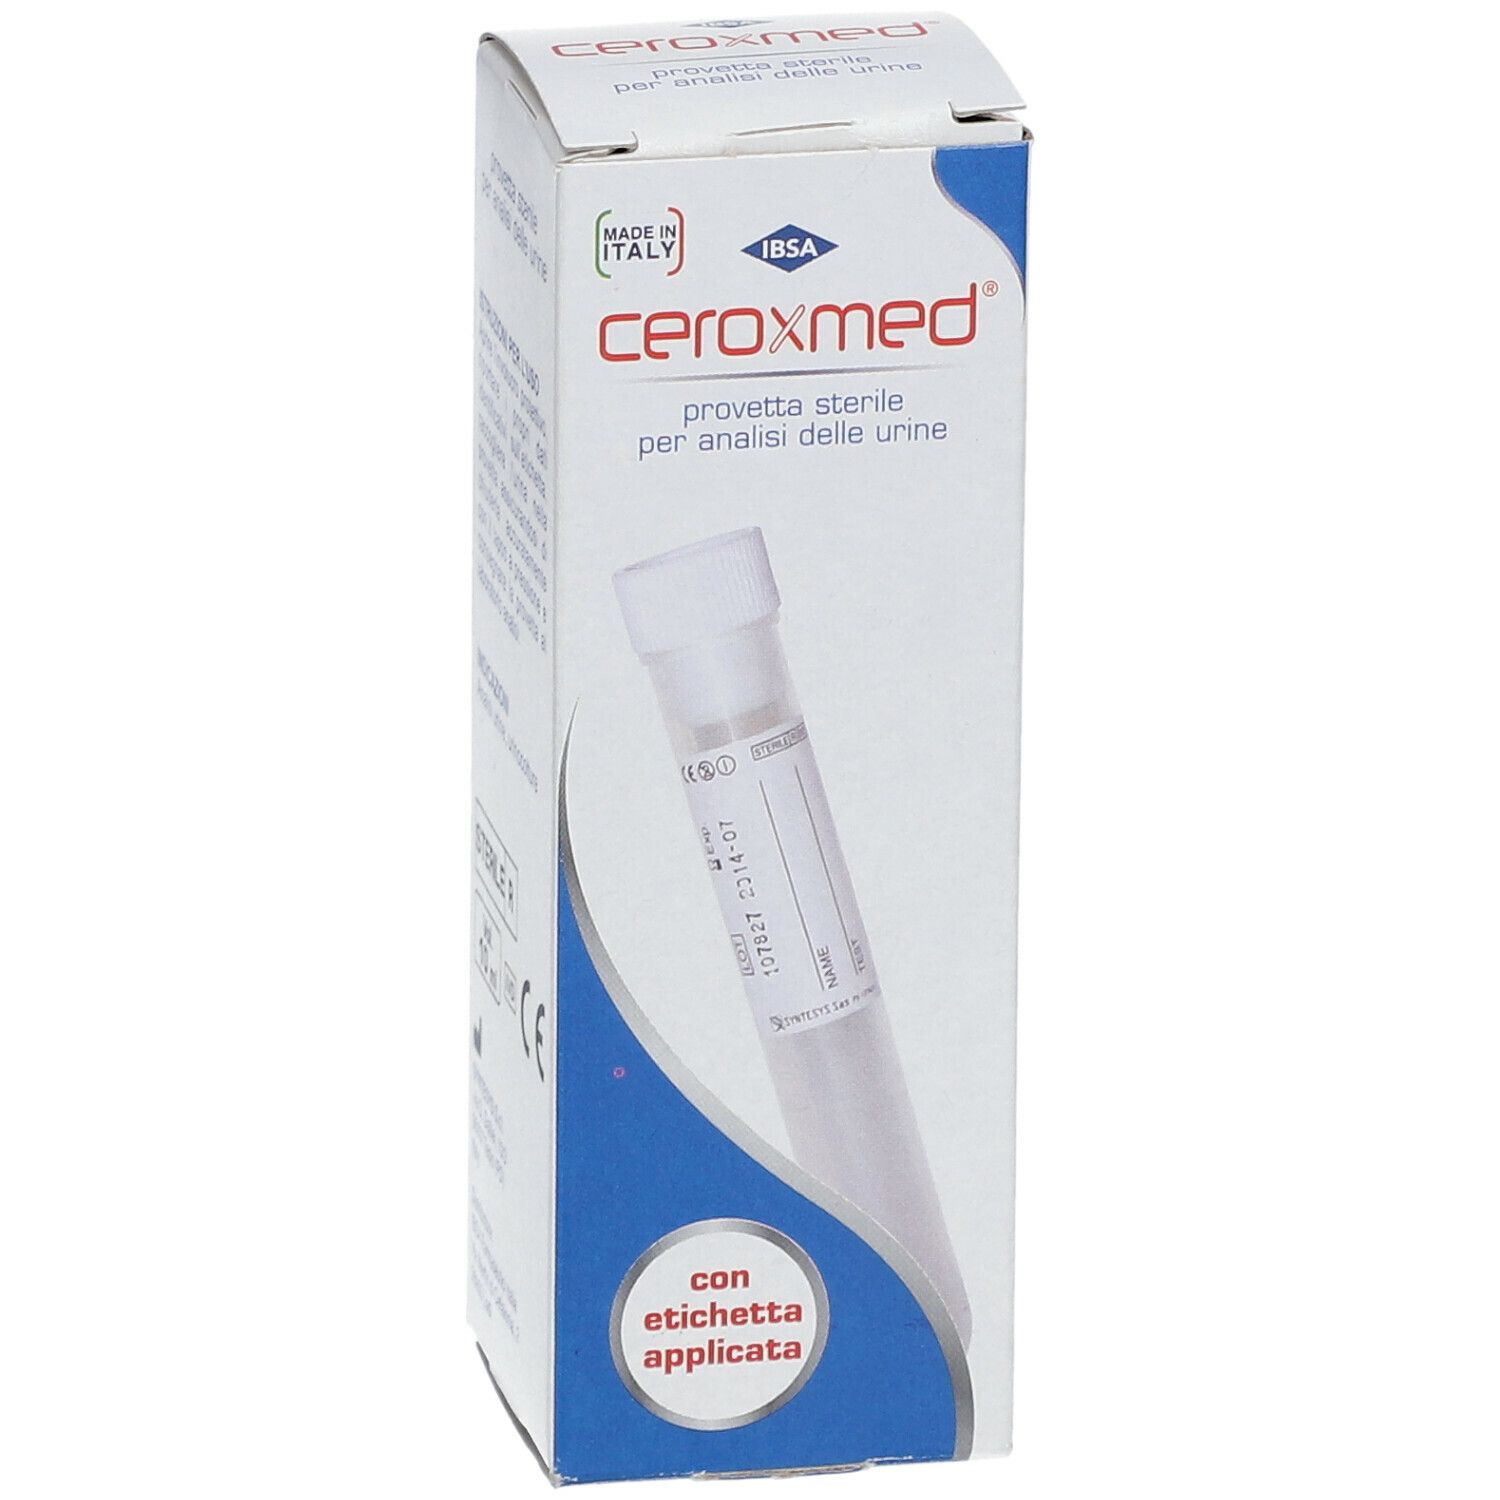 Ceroxmed® Provetta Sterile